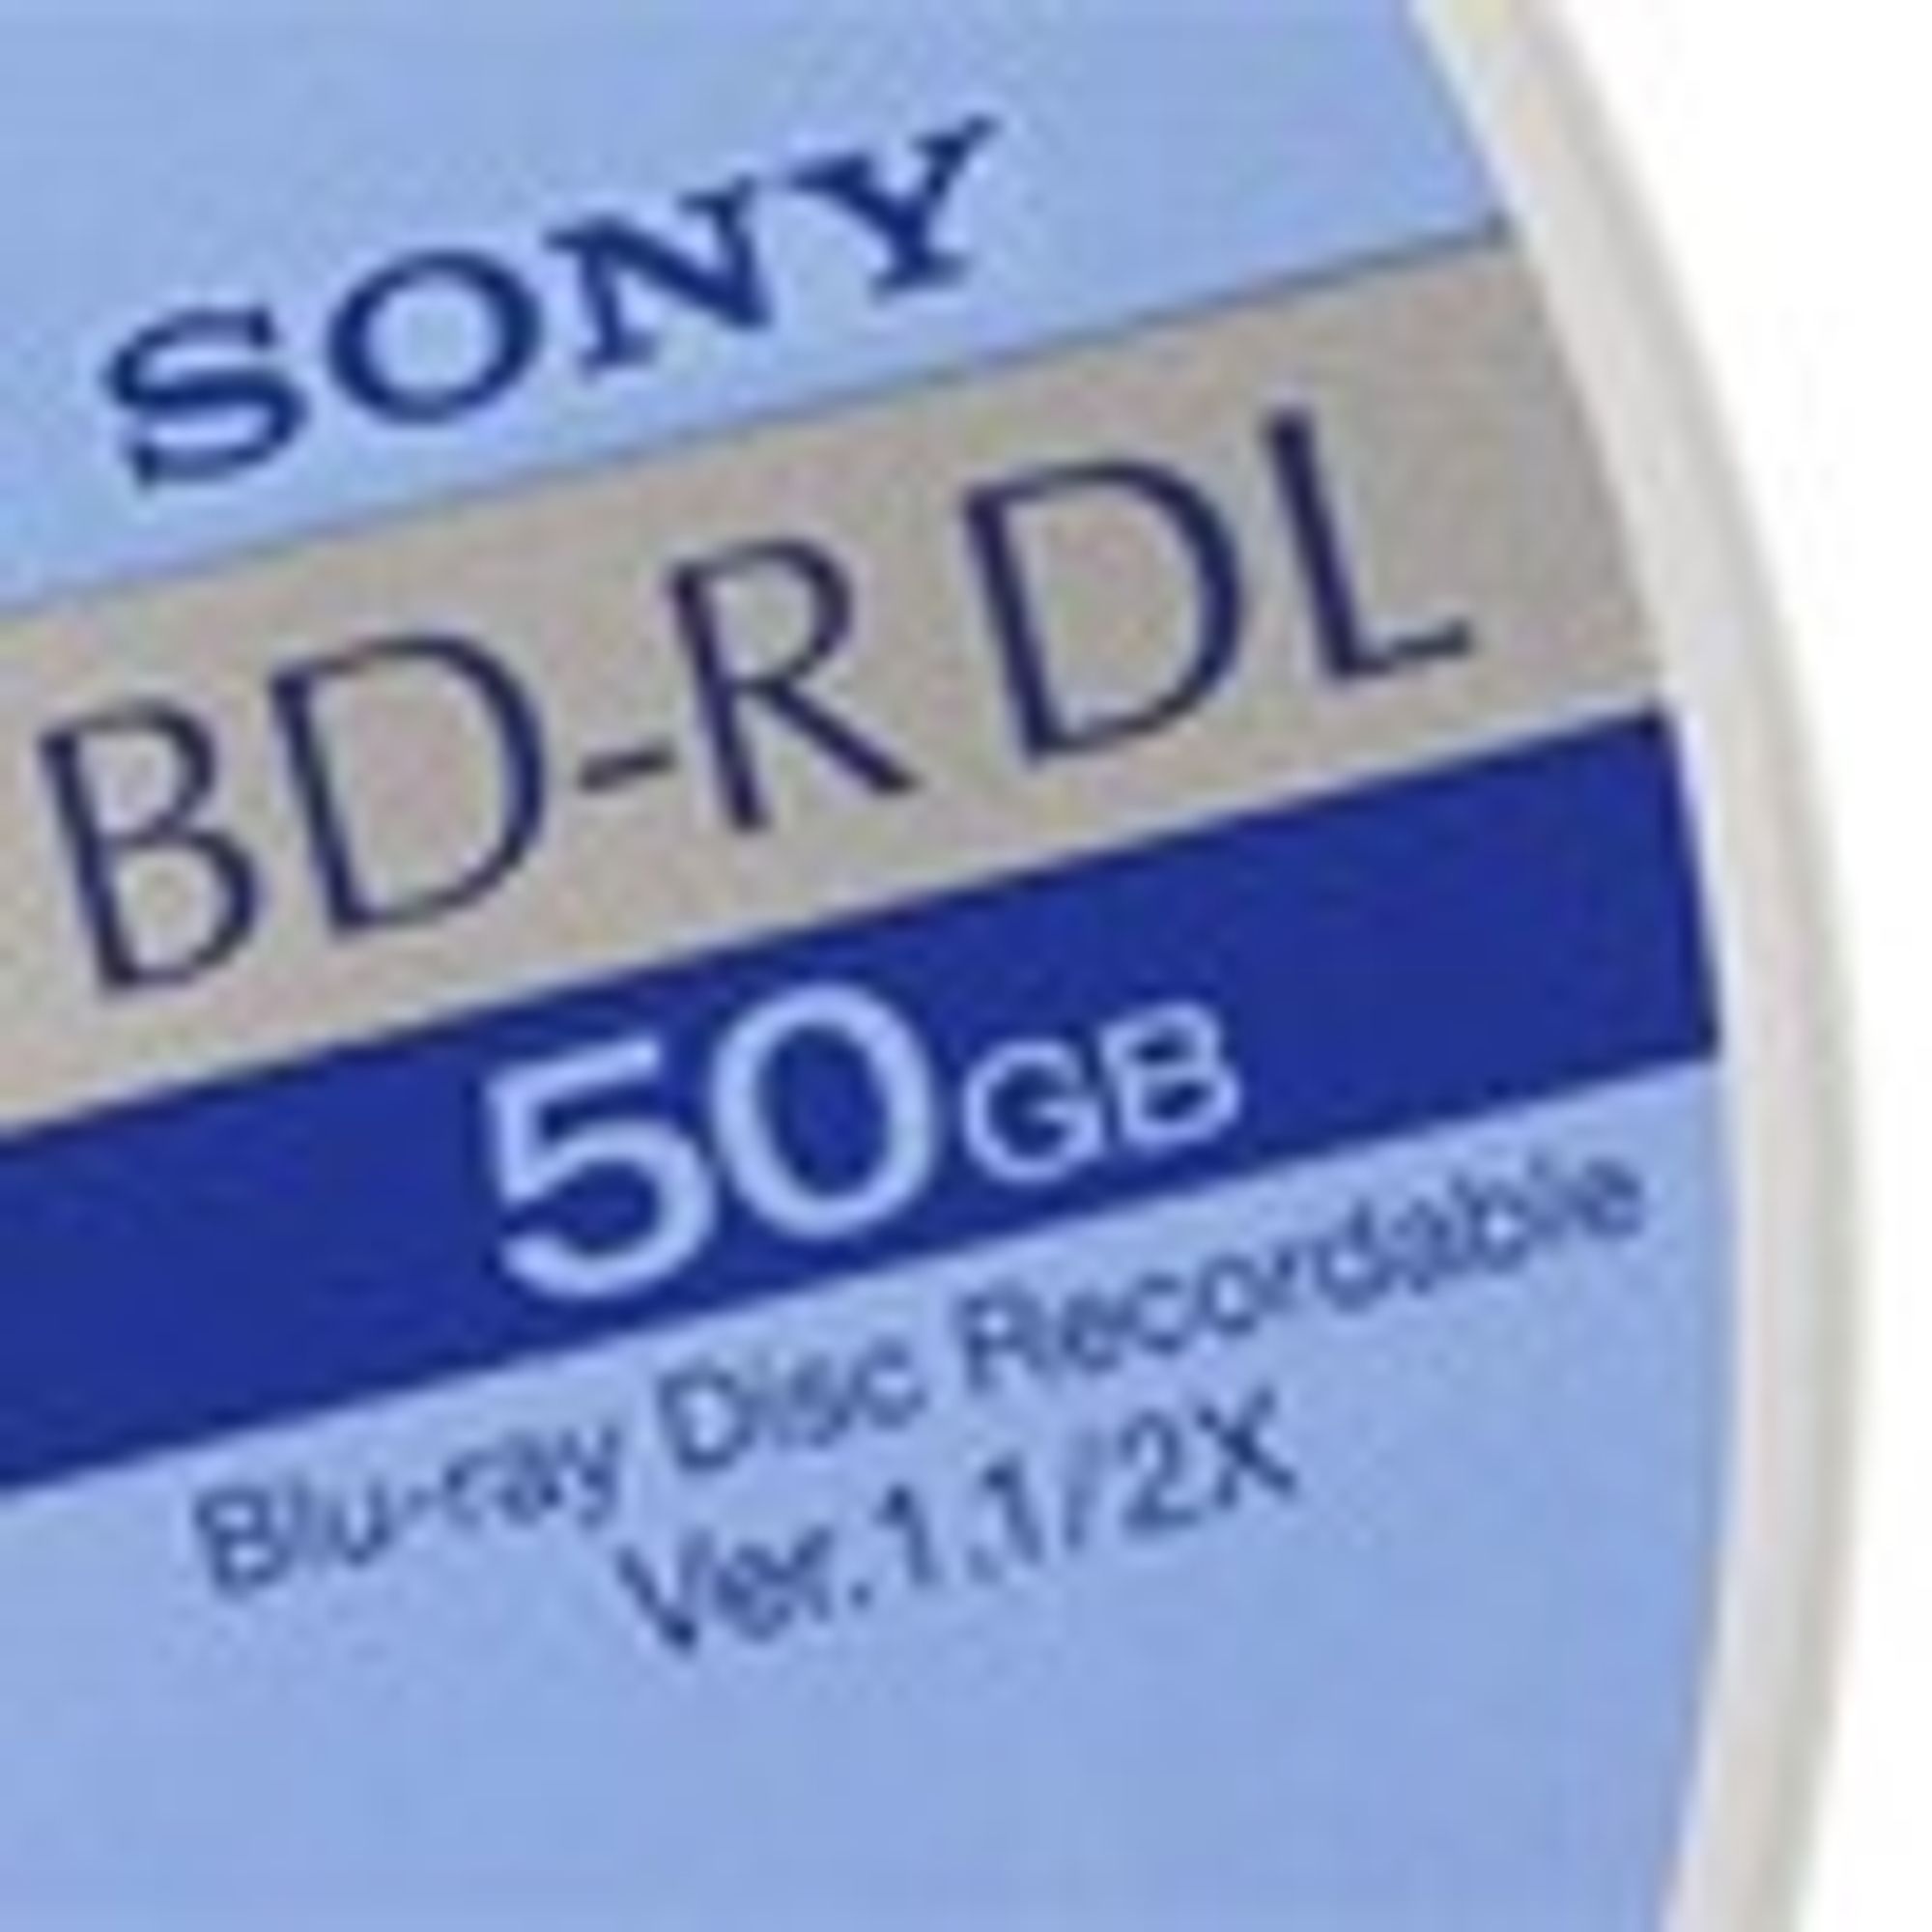 Blu-ray formatet selger mer enn HD DVD